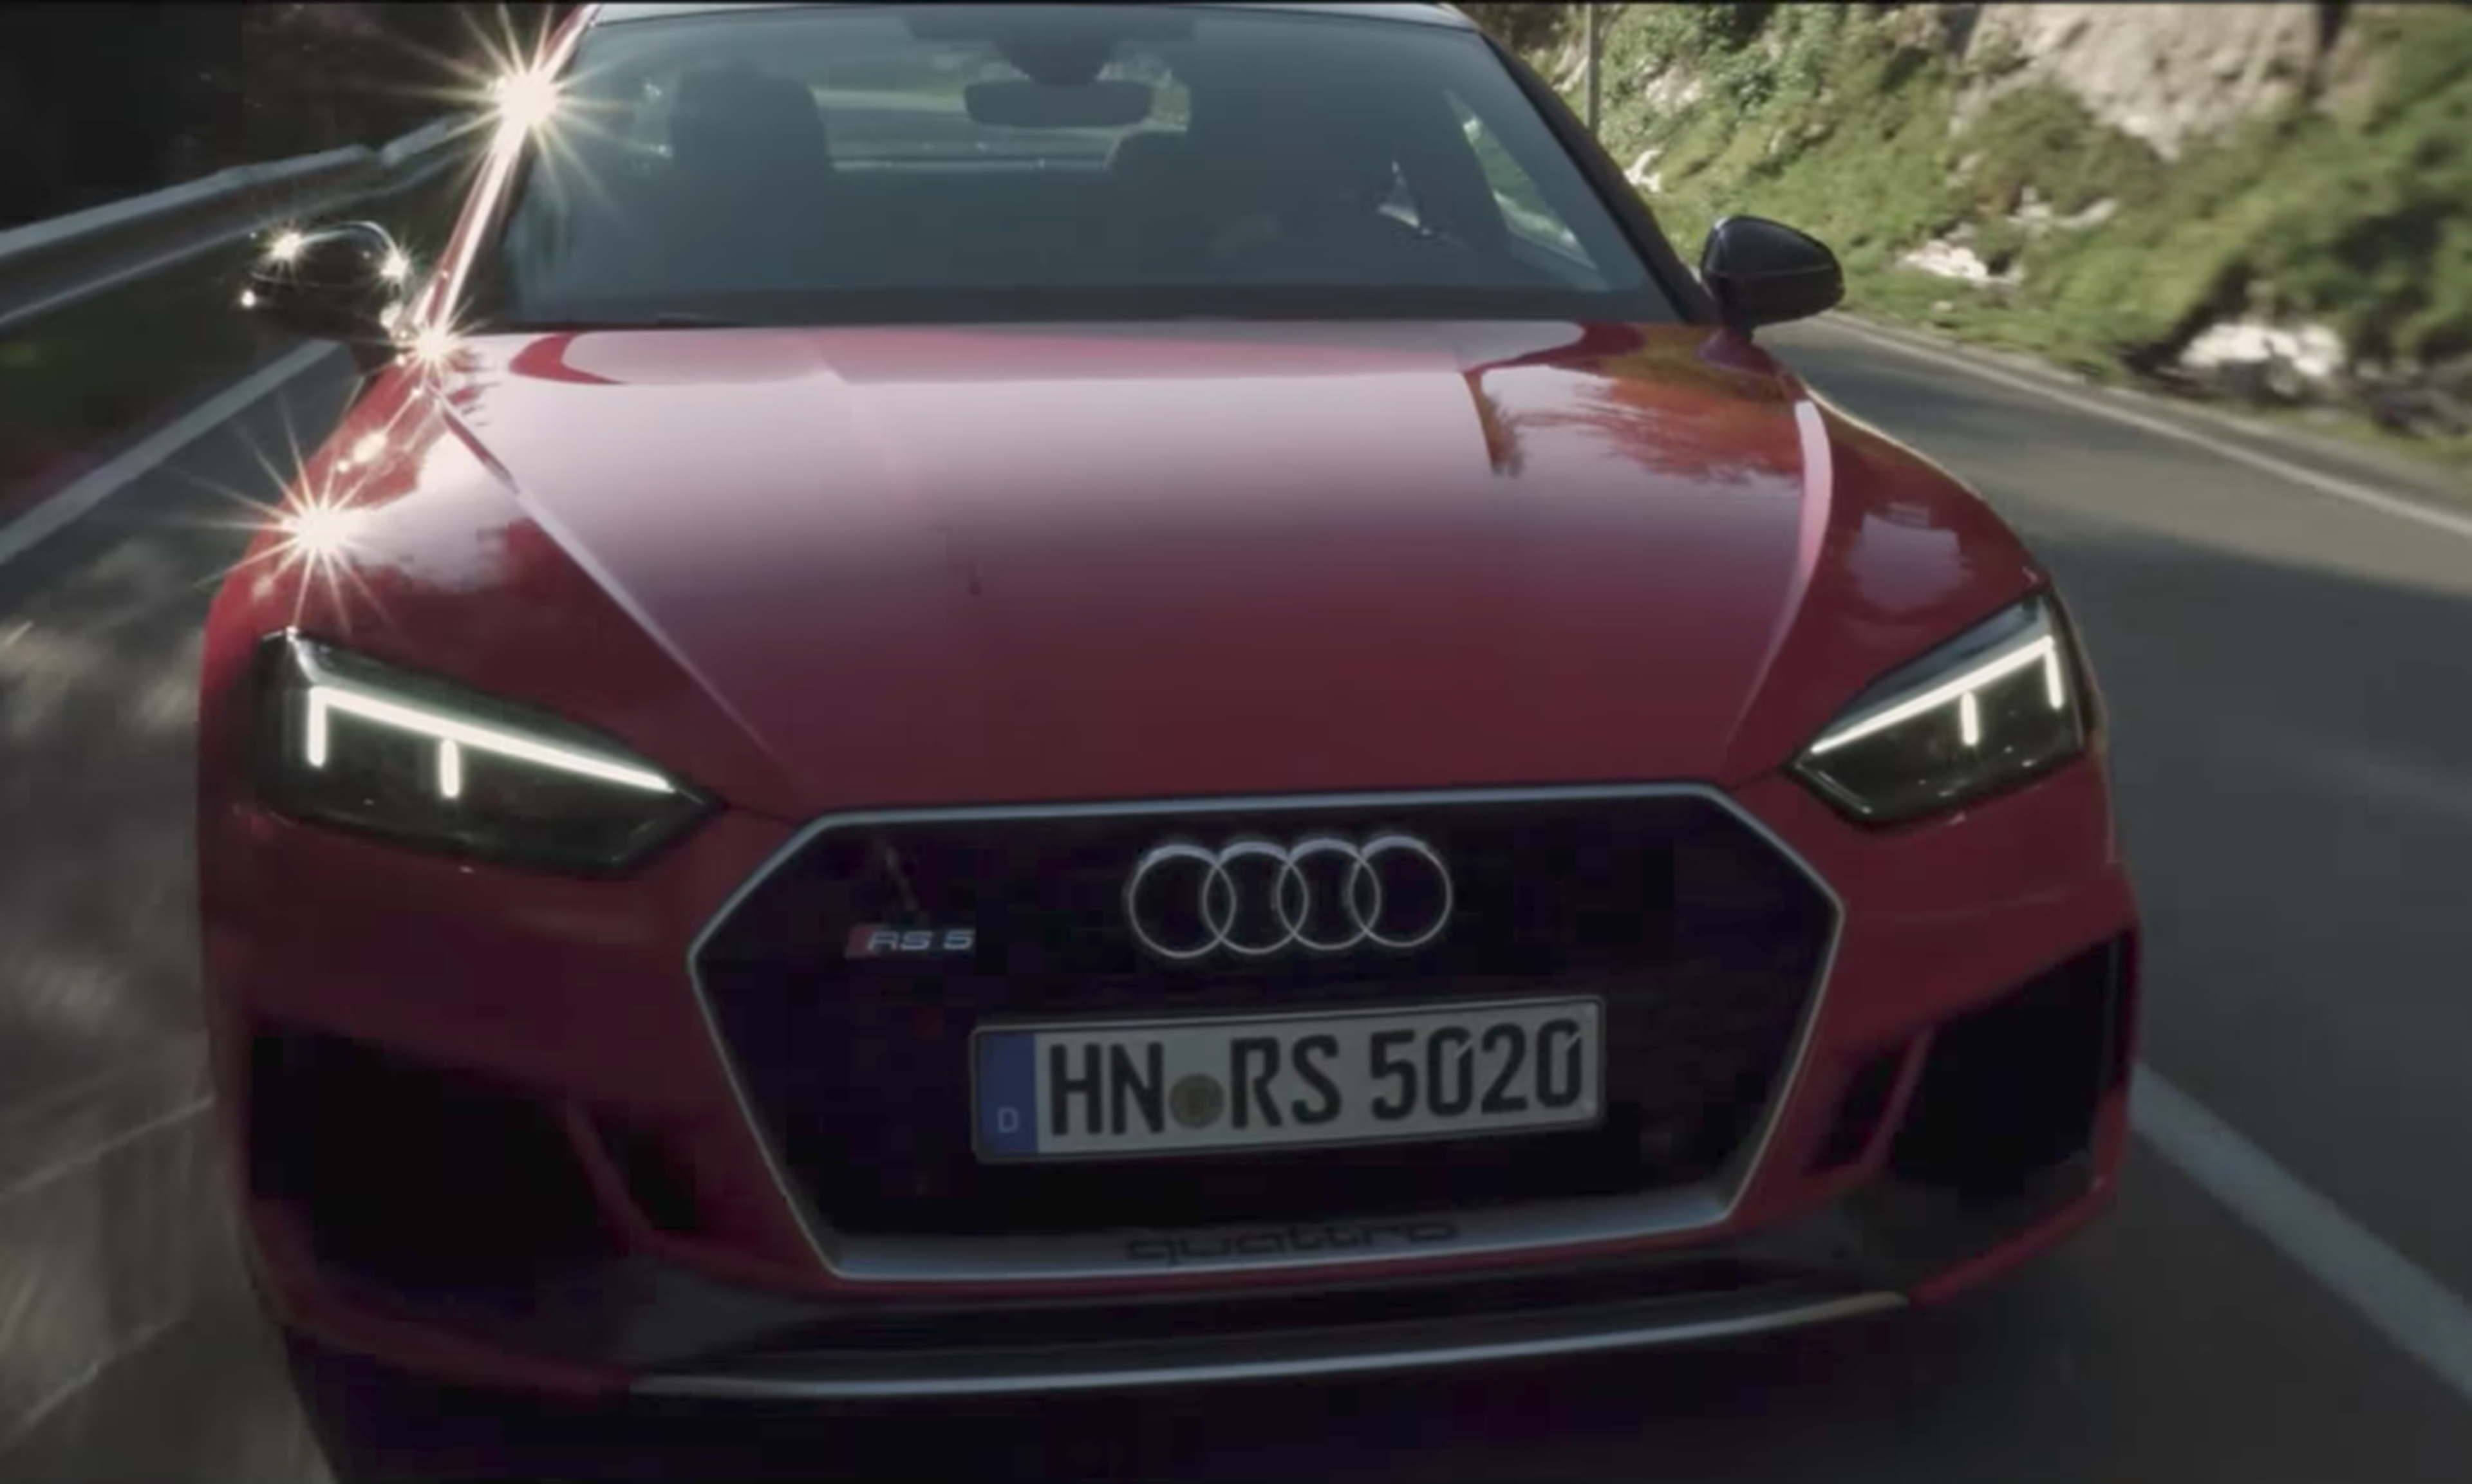 VÍDEO: ¿Qué es lo que más destacarías del Audi RS 5 Coupé? [TG]